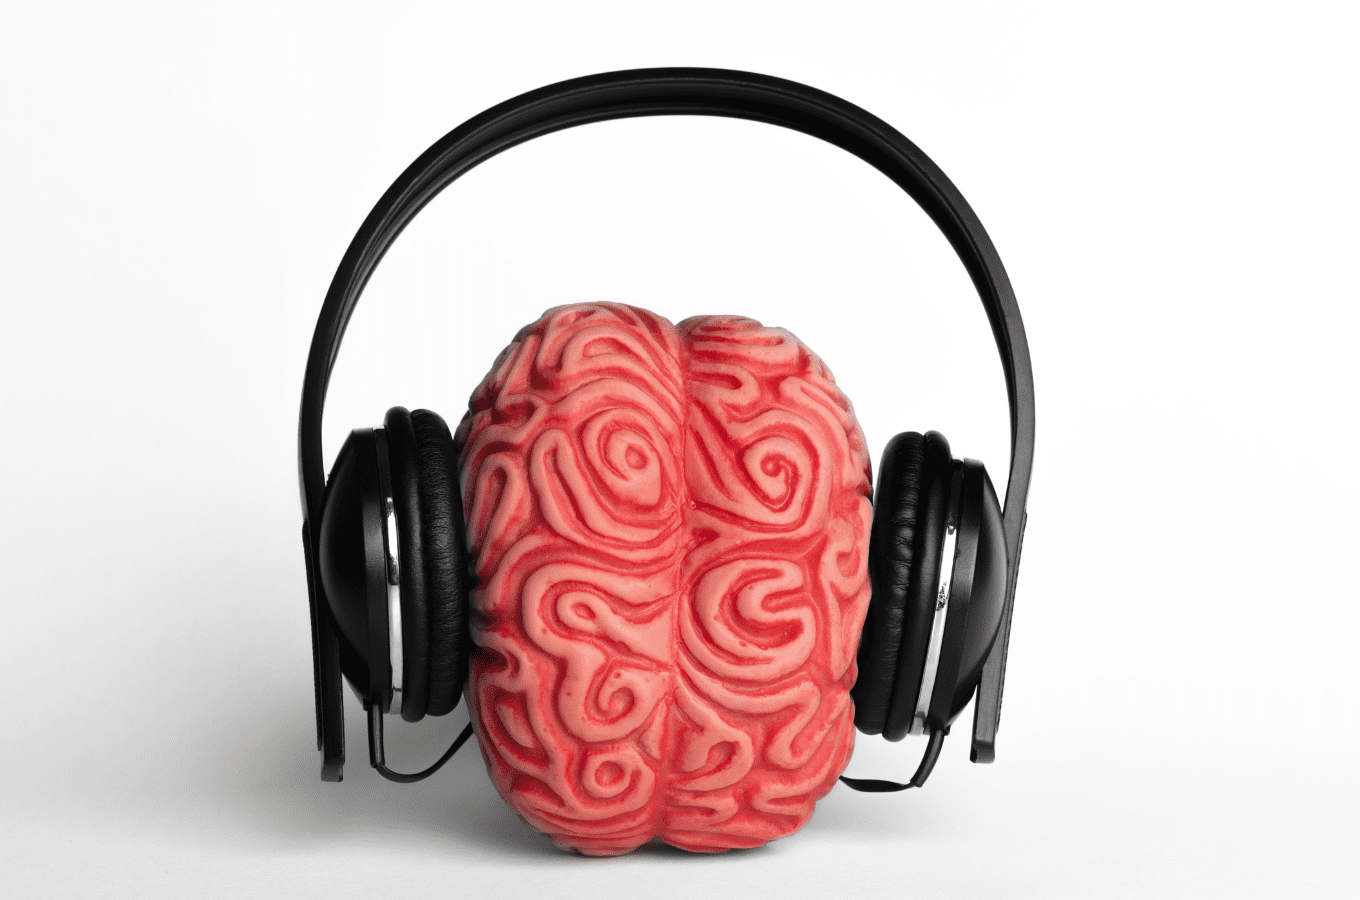 A model of a brain wearing headphones